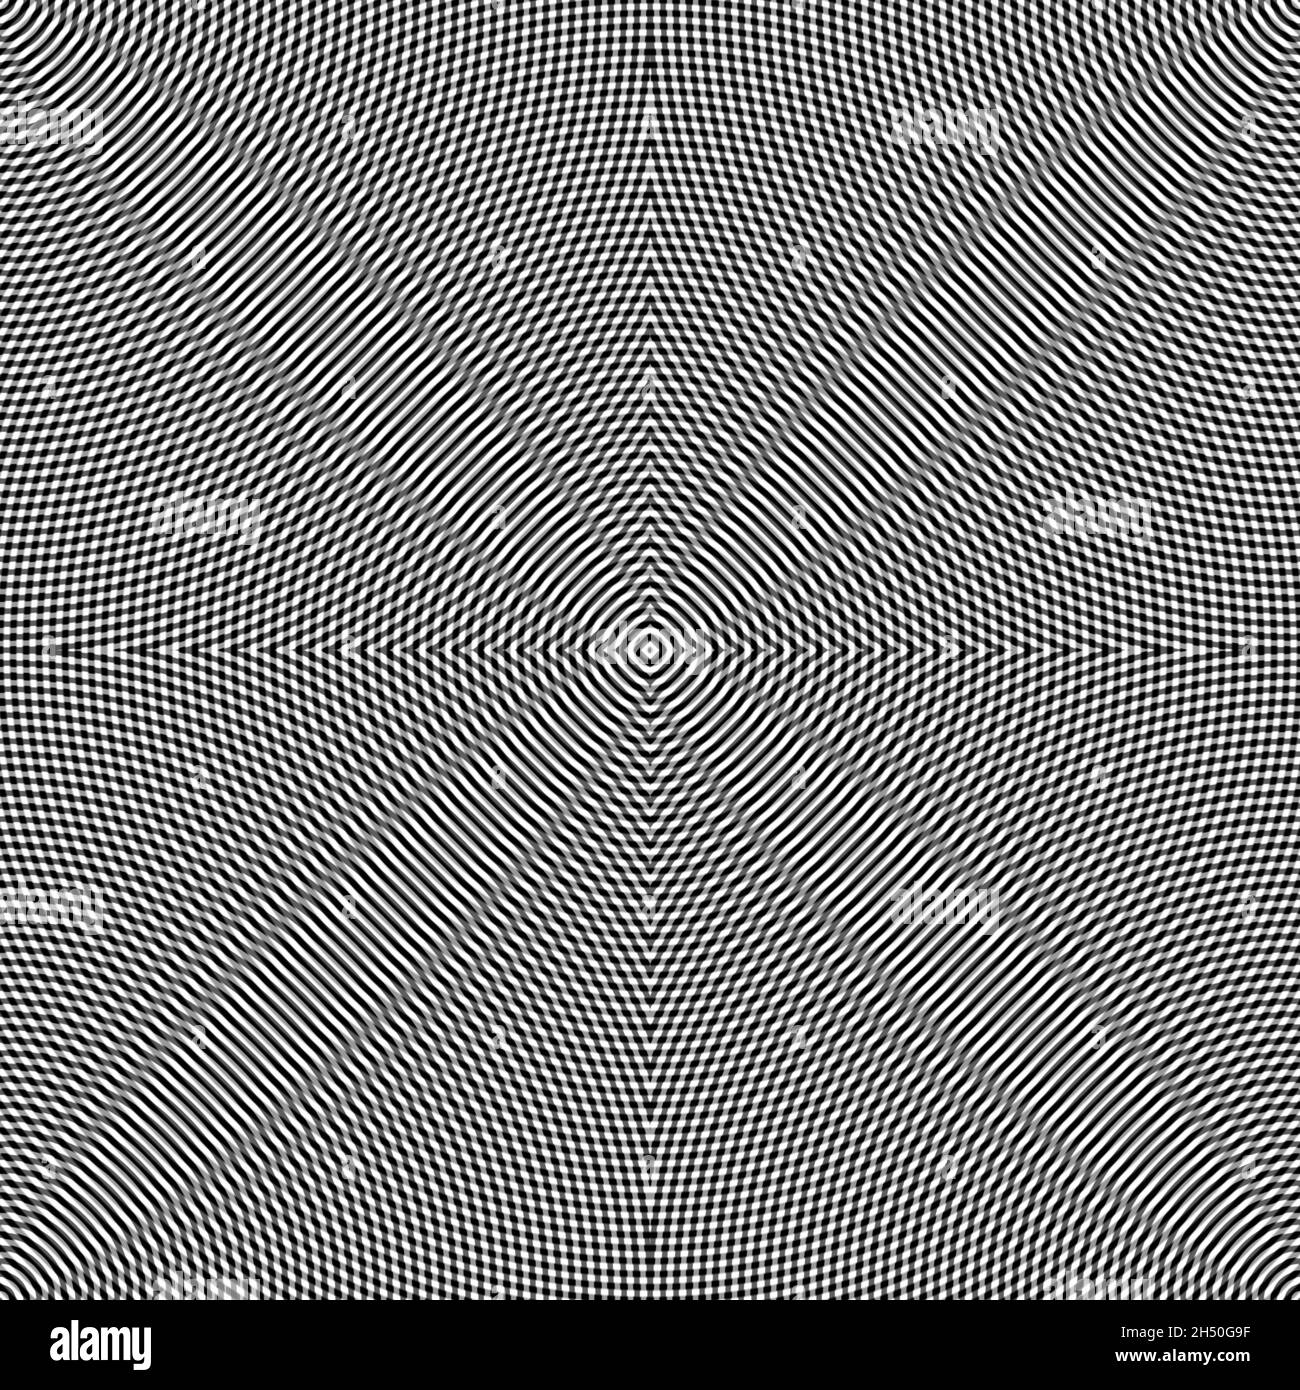 Kreisförmige schwarz-weiße Linien schaffen eine hypnotisierende gewellte Illusion, eine abstrakte Illustration Stockfoto